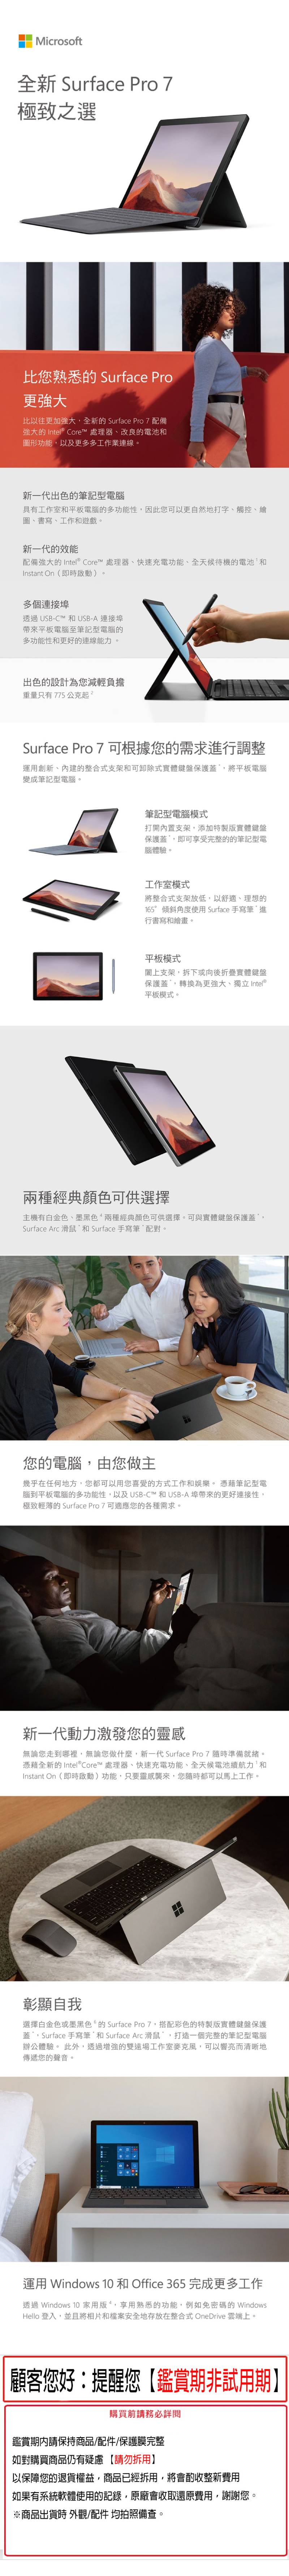 【微軟】Surface Pro 7+(I5/8G/128G SSD)2in1平板